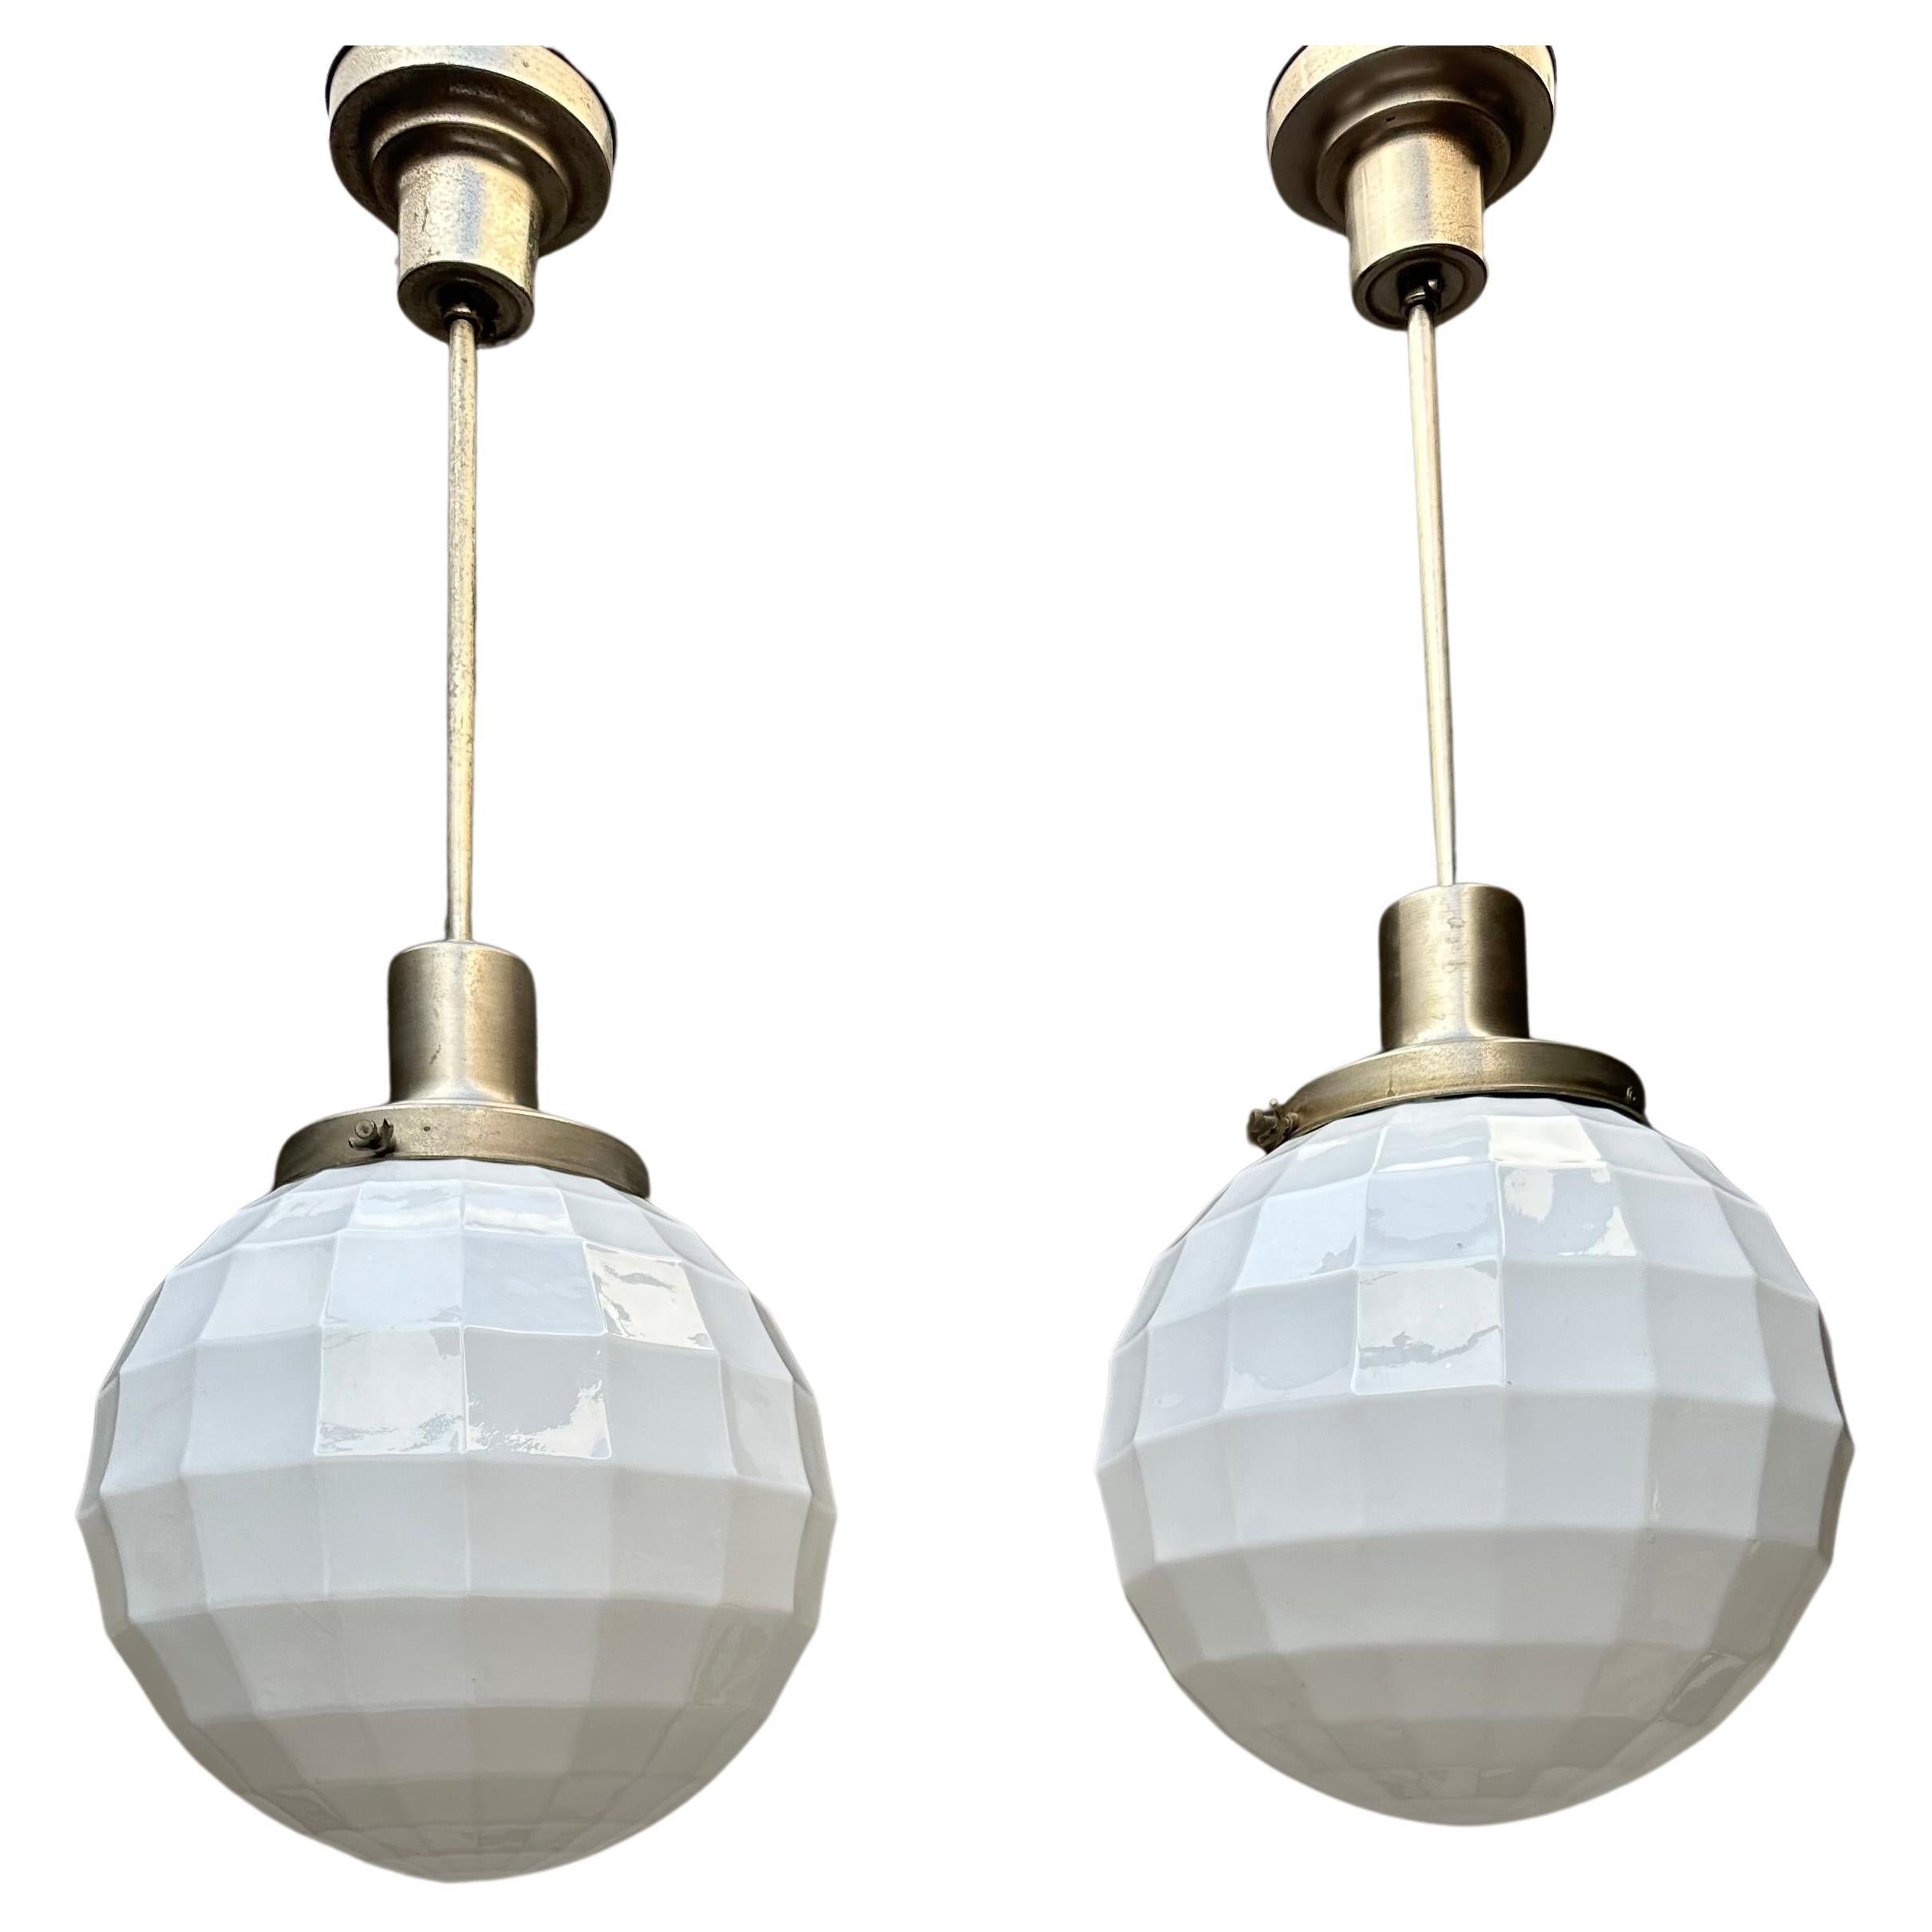 Rare paire de lampes à suspension en verre opalin de l'époque Art Déco, Design Ball and Ball/One Philips